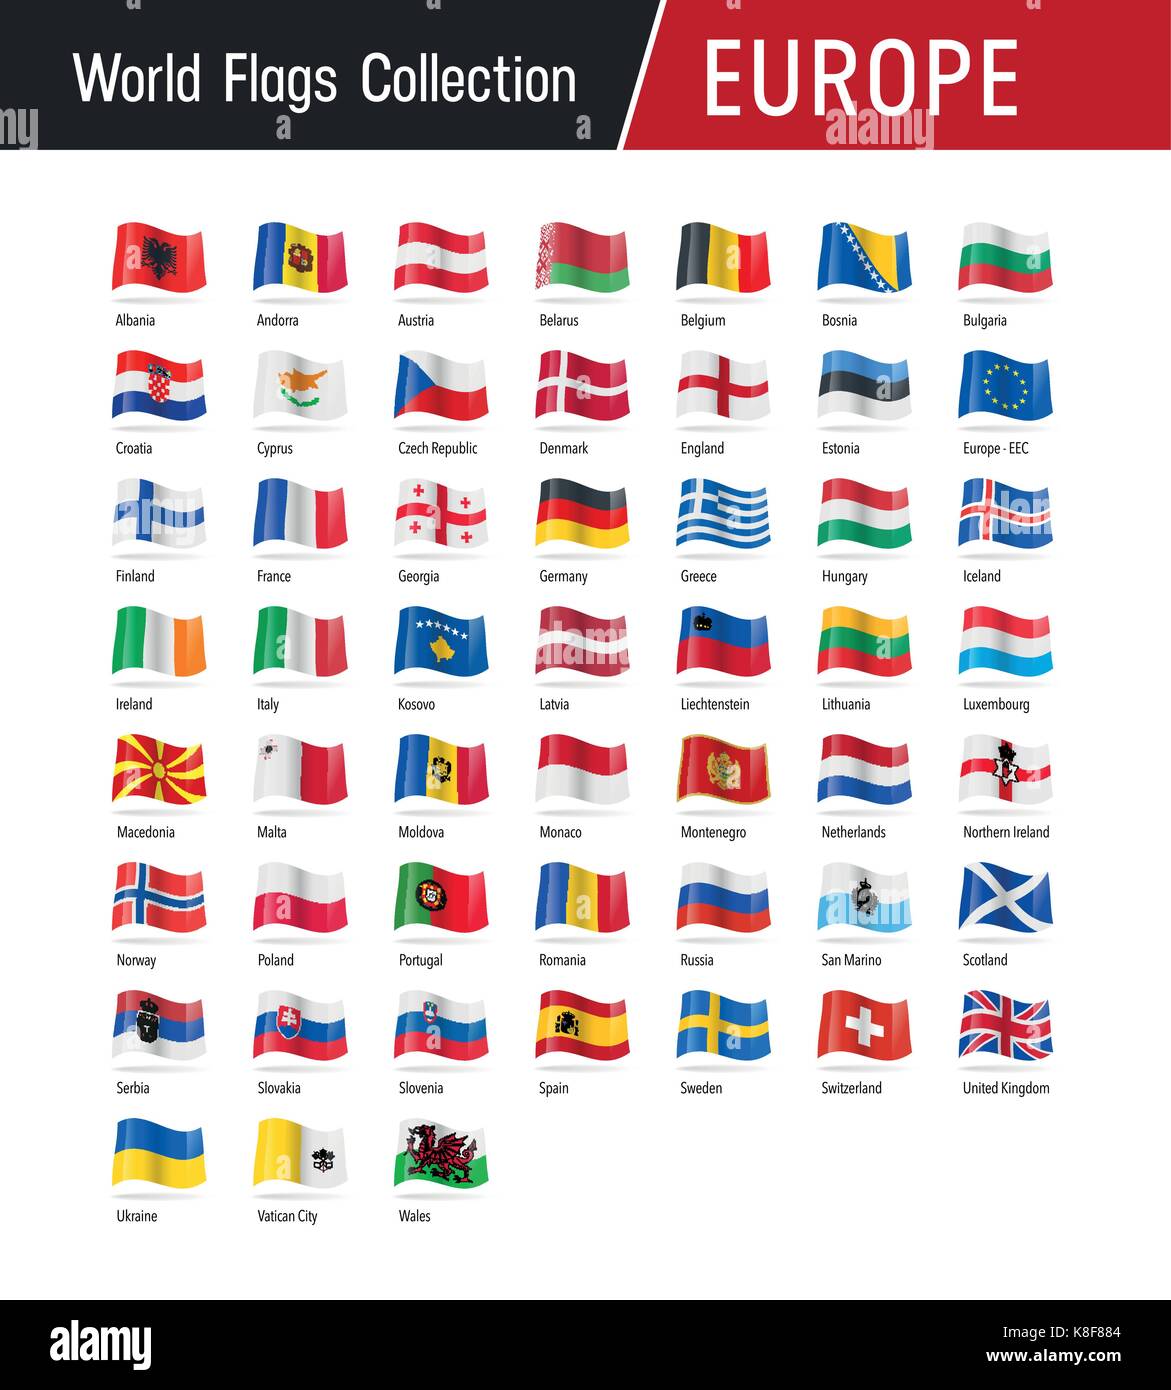 Flaggen von Europa, winken im Wind - Vektor Welt Fahnen Sammlung Stock Vektor